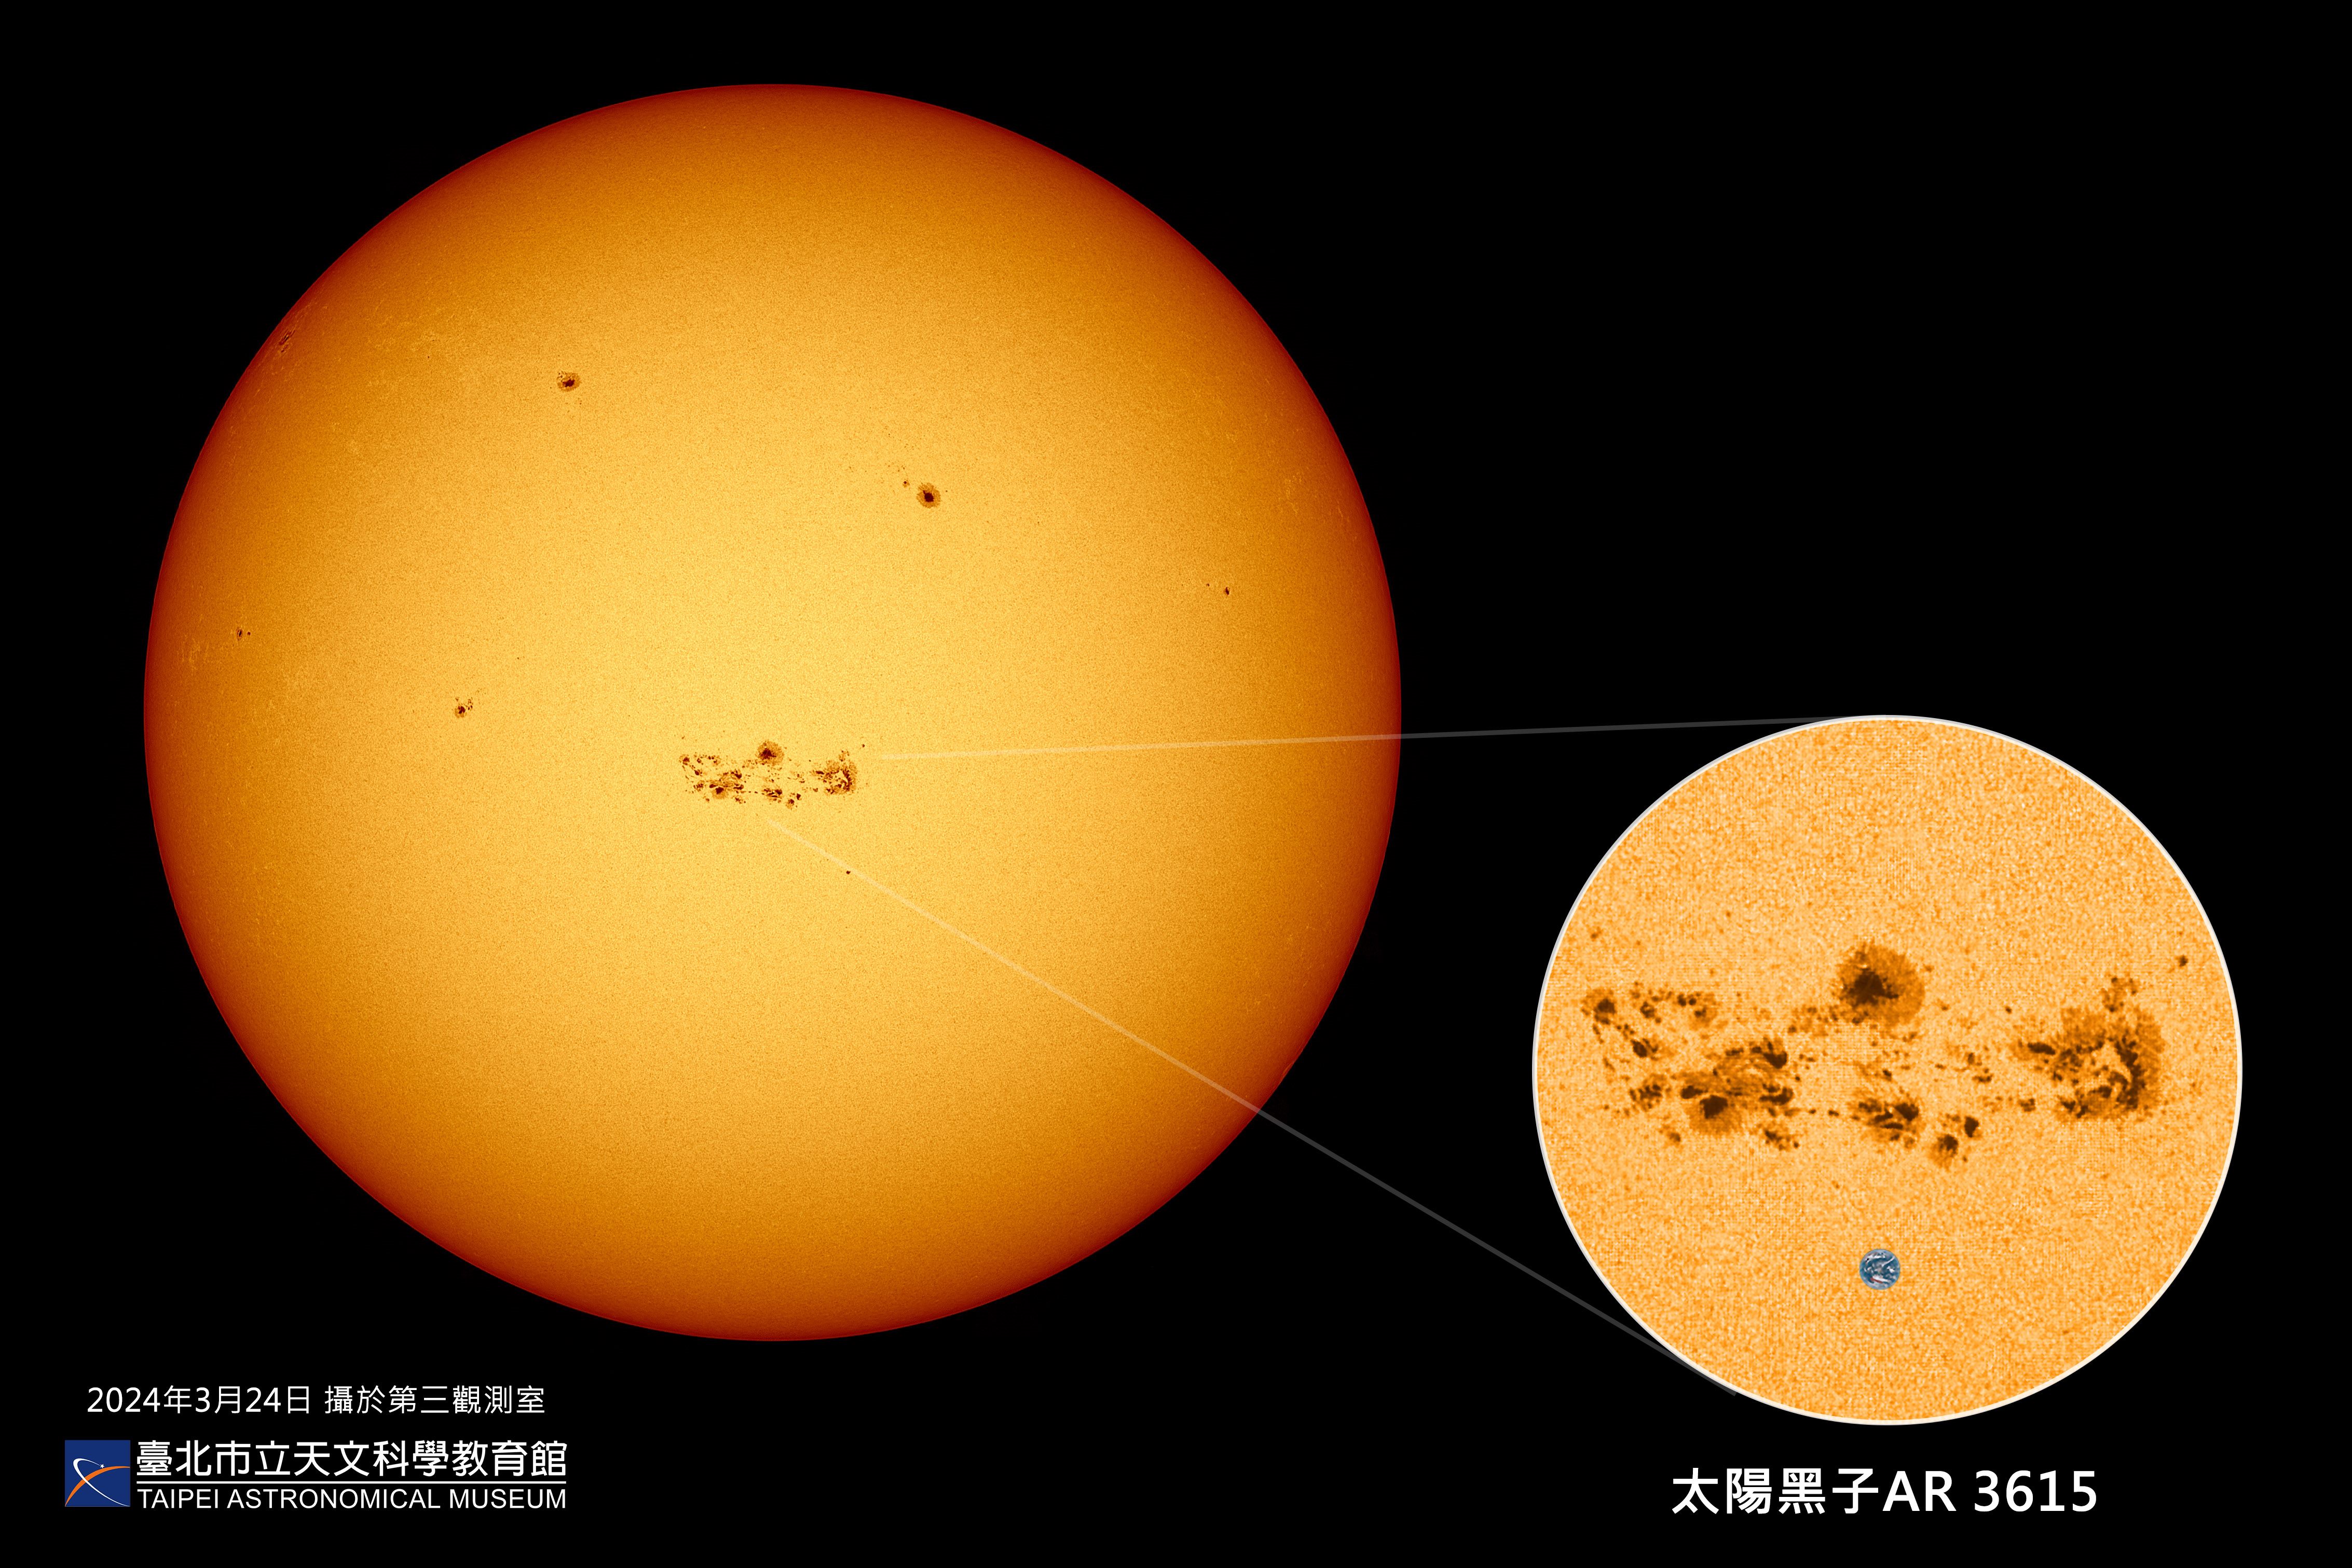 太陽活動極大期提前報到   太陽黑子  極光  磁暴異常活躍